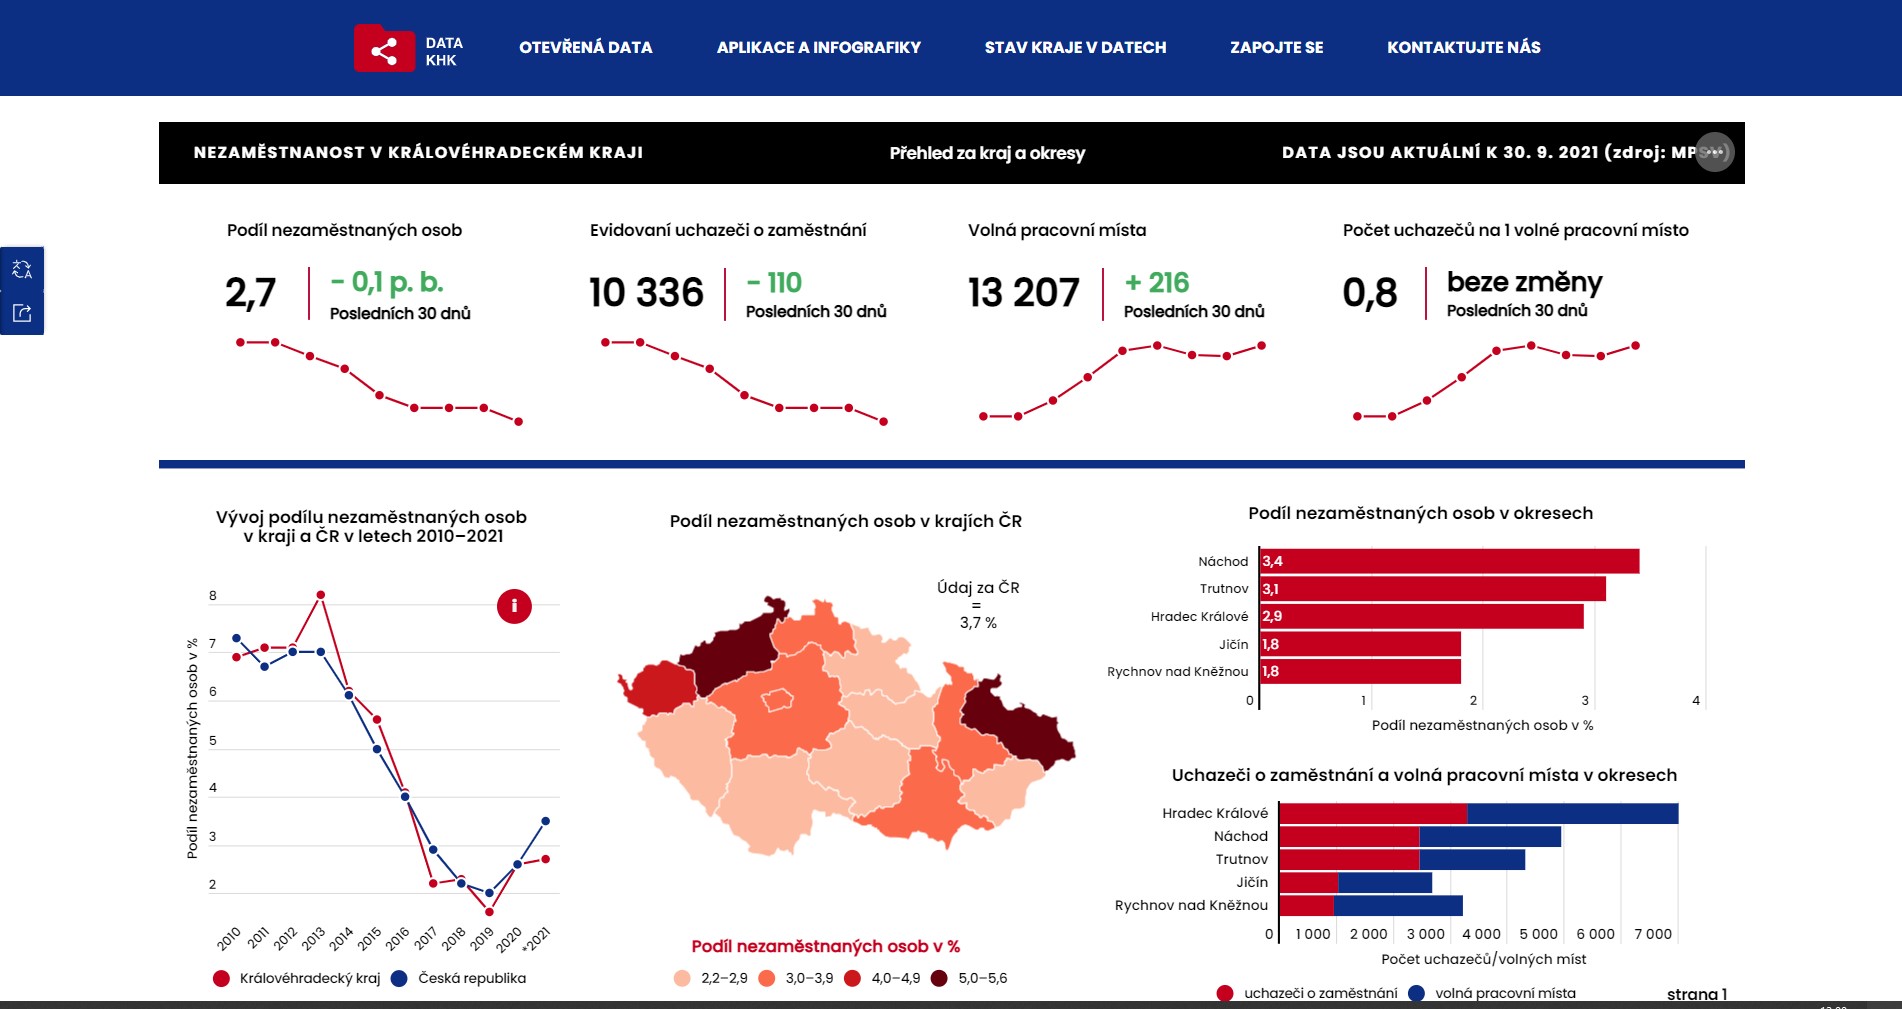 Nový datový portál zpřístupňuje data a informace z Královéhradeckého kraje